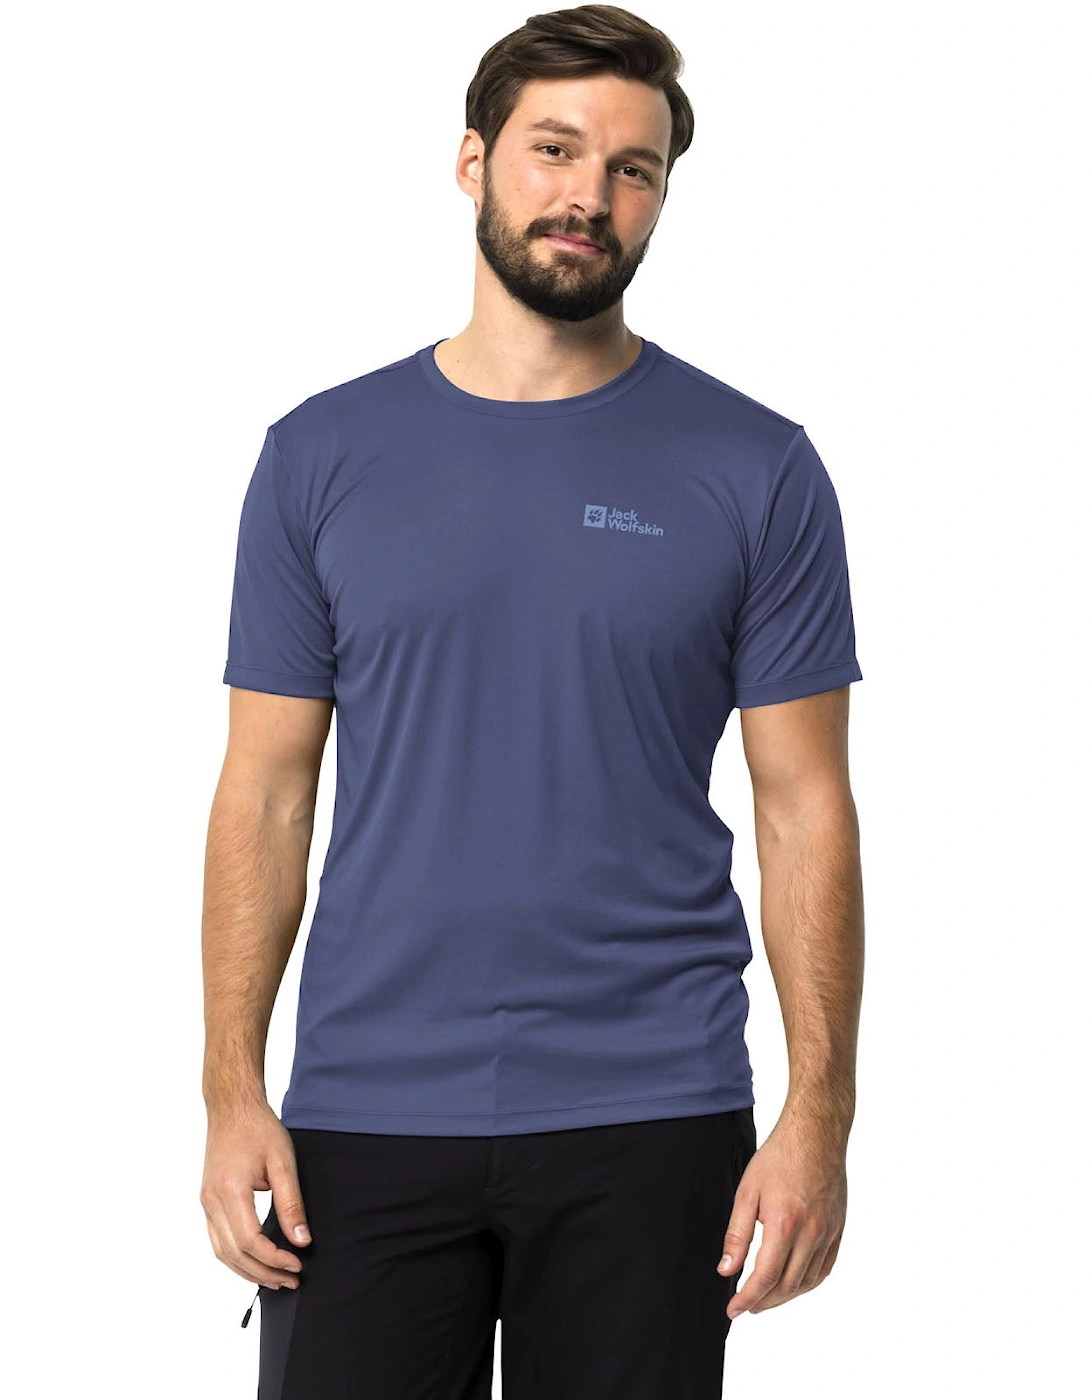 Mens Tech Short Sleeve T-Shirt